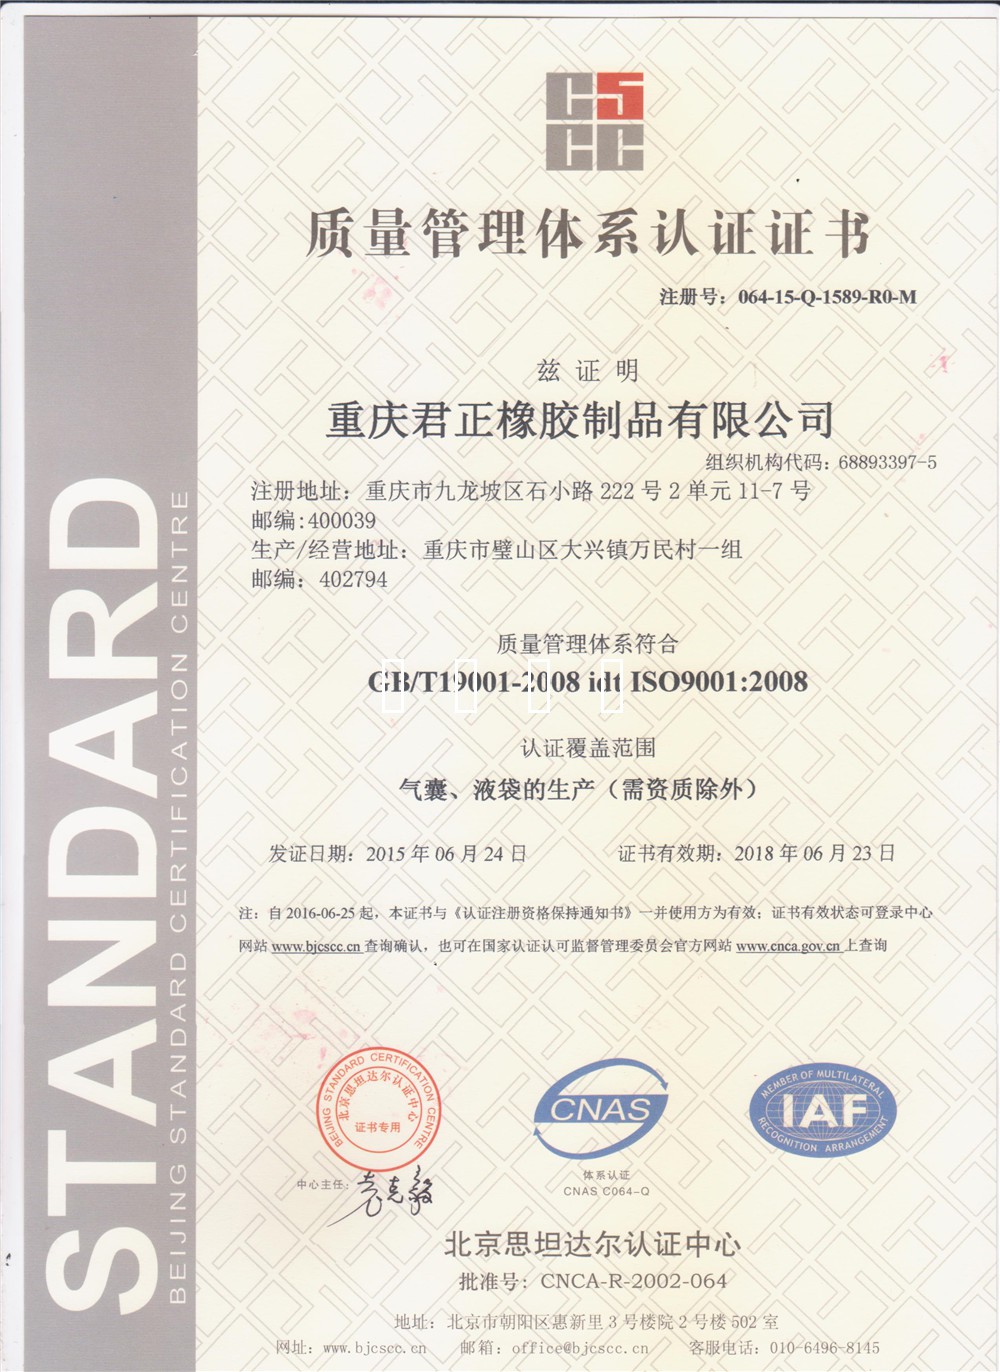 祝贺我公司荣获ISO9001 : 2008质量管理体系认证证书